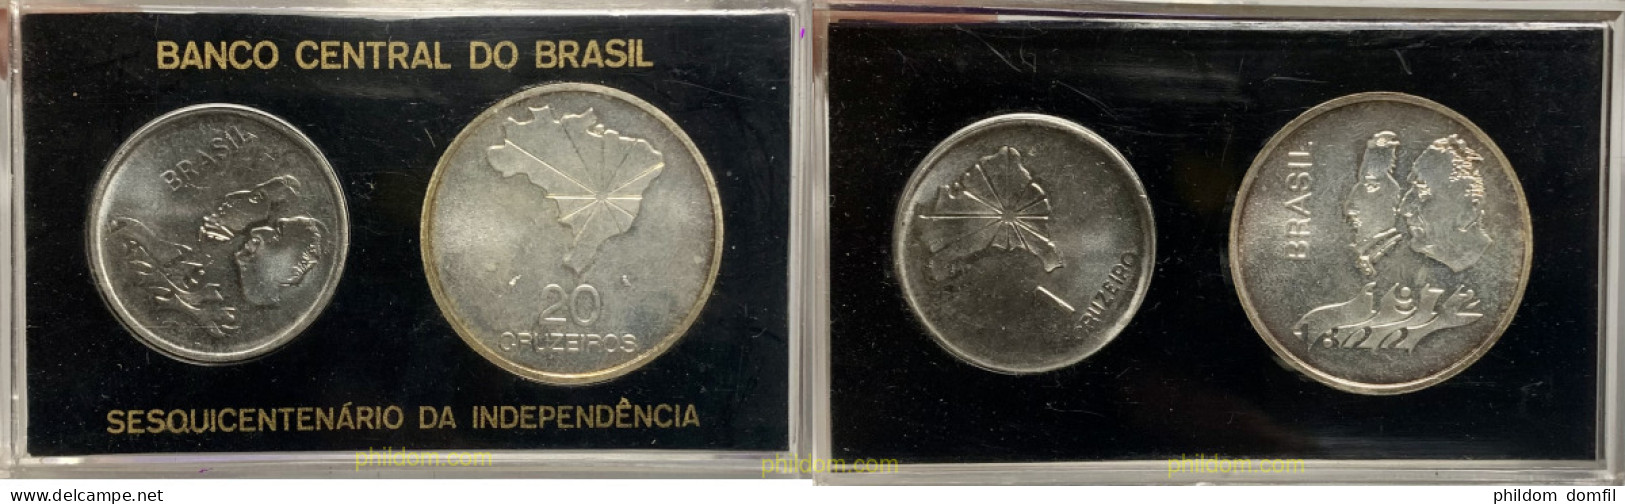 3599 BRASIL 1972 BRASIL 1 CRUZEIRO 20 CRUZEIROS 1972 SESQUINCENTENARIO DA INDEPENDENCIA - Brazil